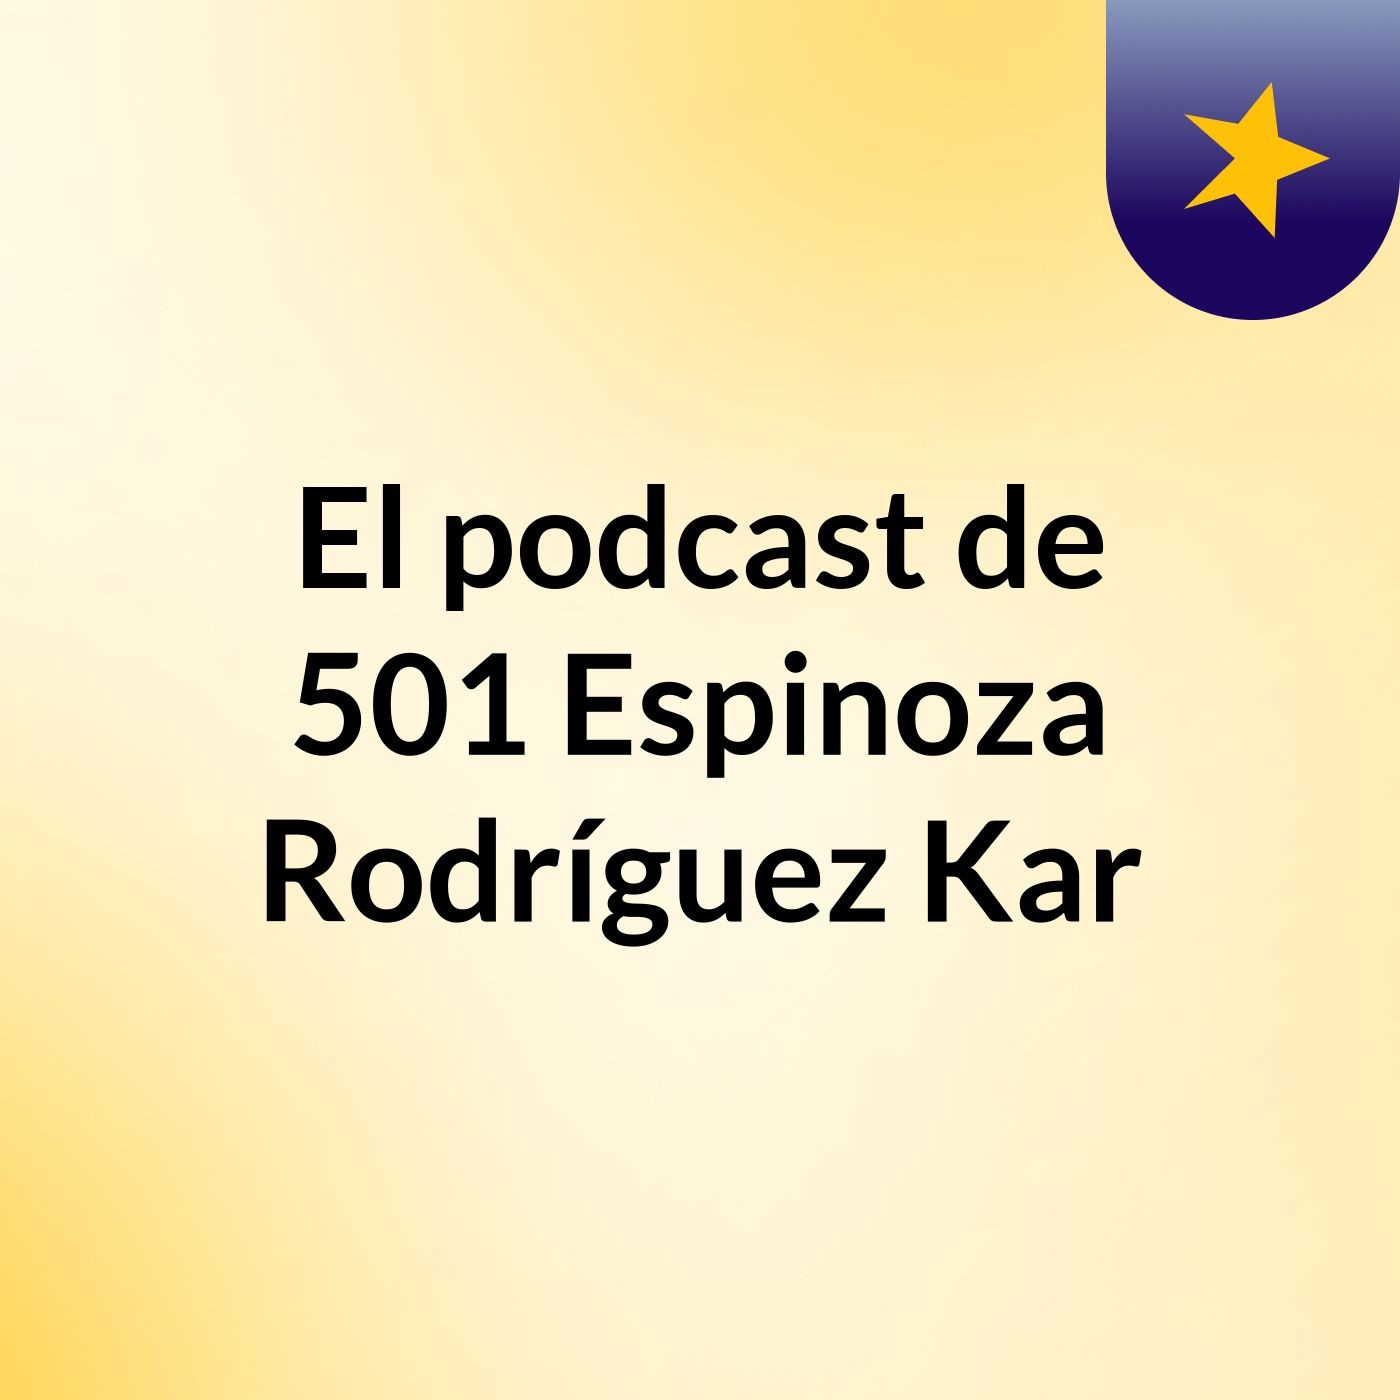 Episodio 2 - El podcast de 501 Espinoza Rodríguez Kar